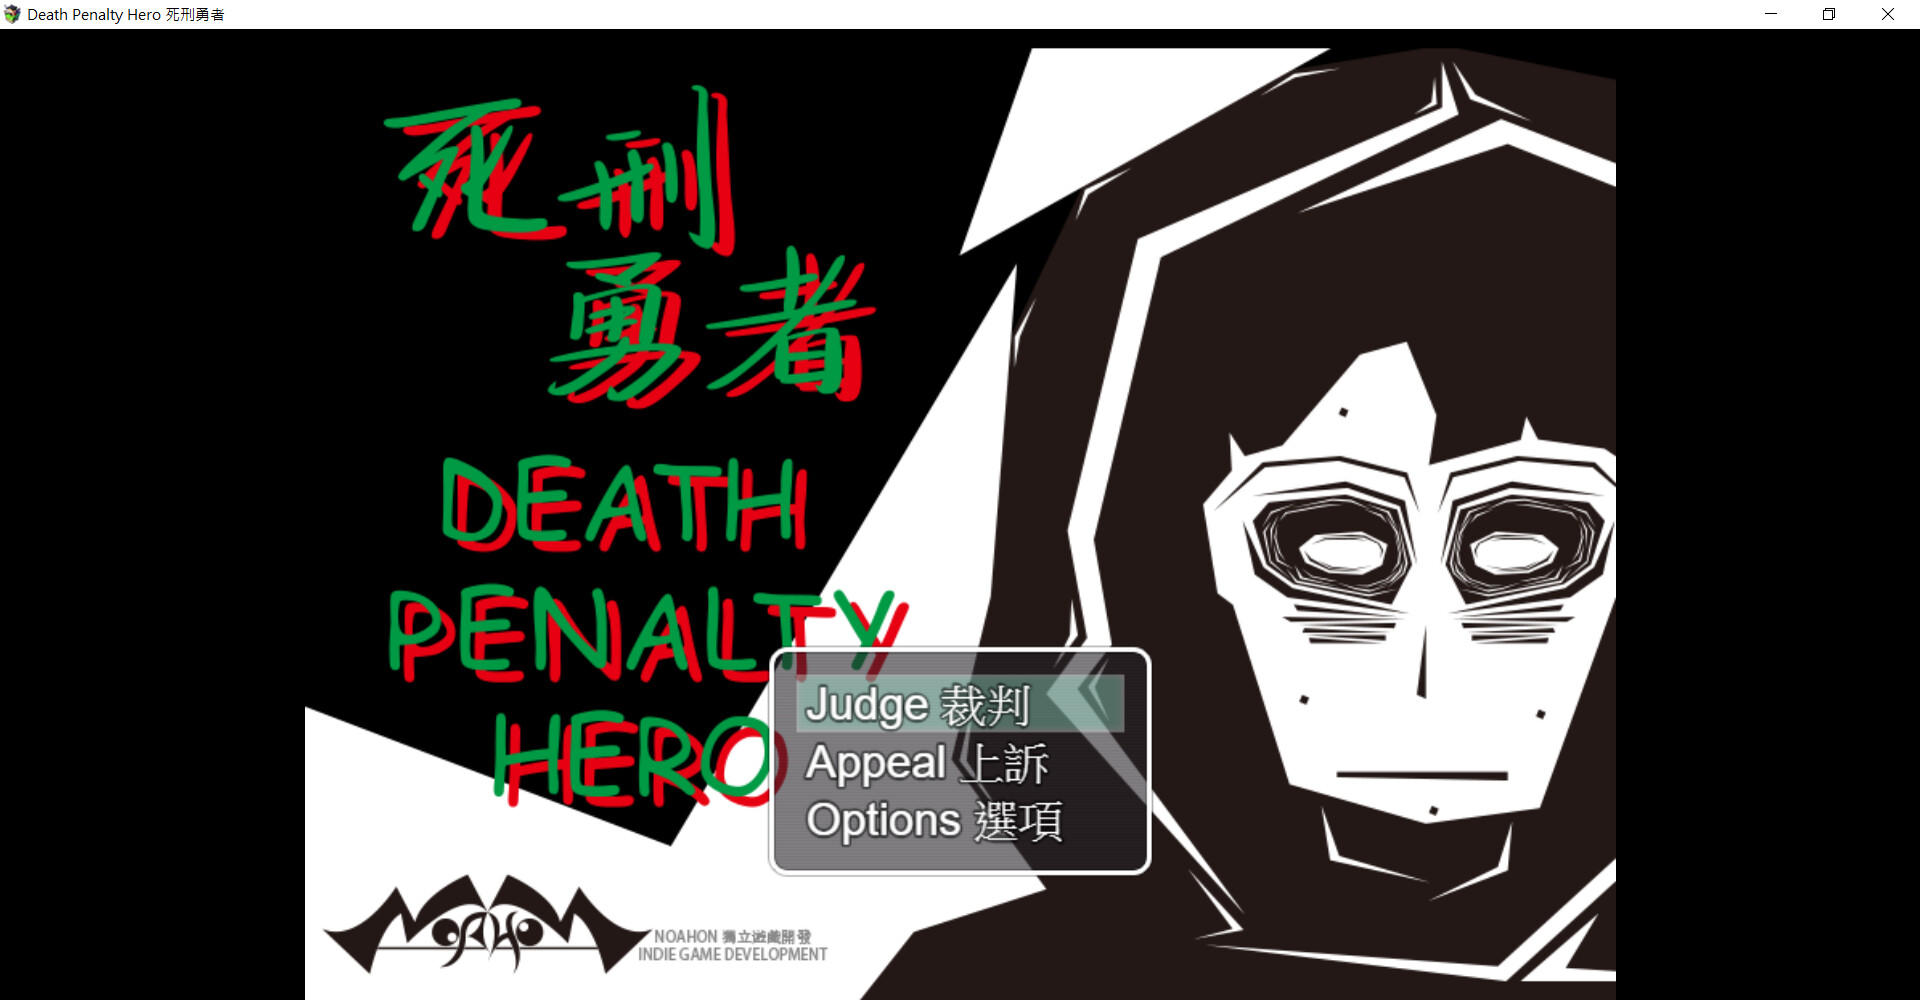 Screenshot 1 of Death Penalty Hero သည် Death Penalty Hero ဖြစ်သည်။ 